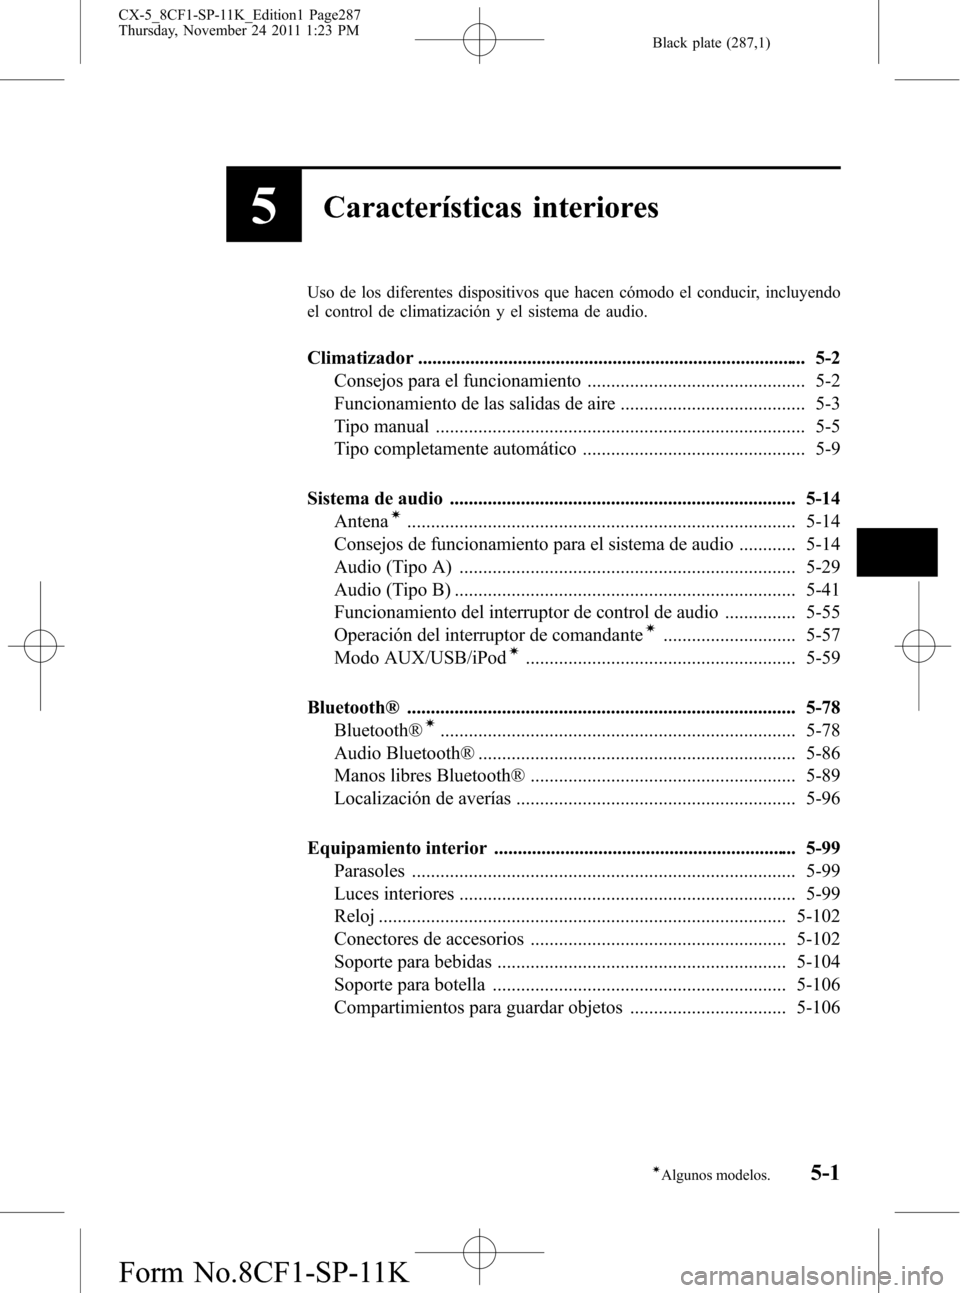 MAZDA MODEL CX-5 2012  Manual del propietario (in Spanish)  Black plate (287,1)
5Características interiores
Uso de los diferentes dispositivos que hacen cómodo el conducir, incluyendo
el control de climatización y el sistema de audio.
Climatizador .........